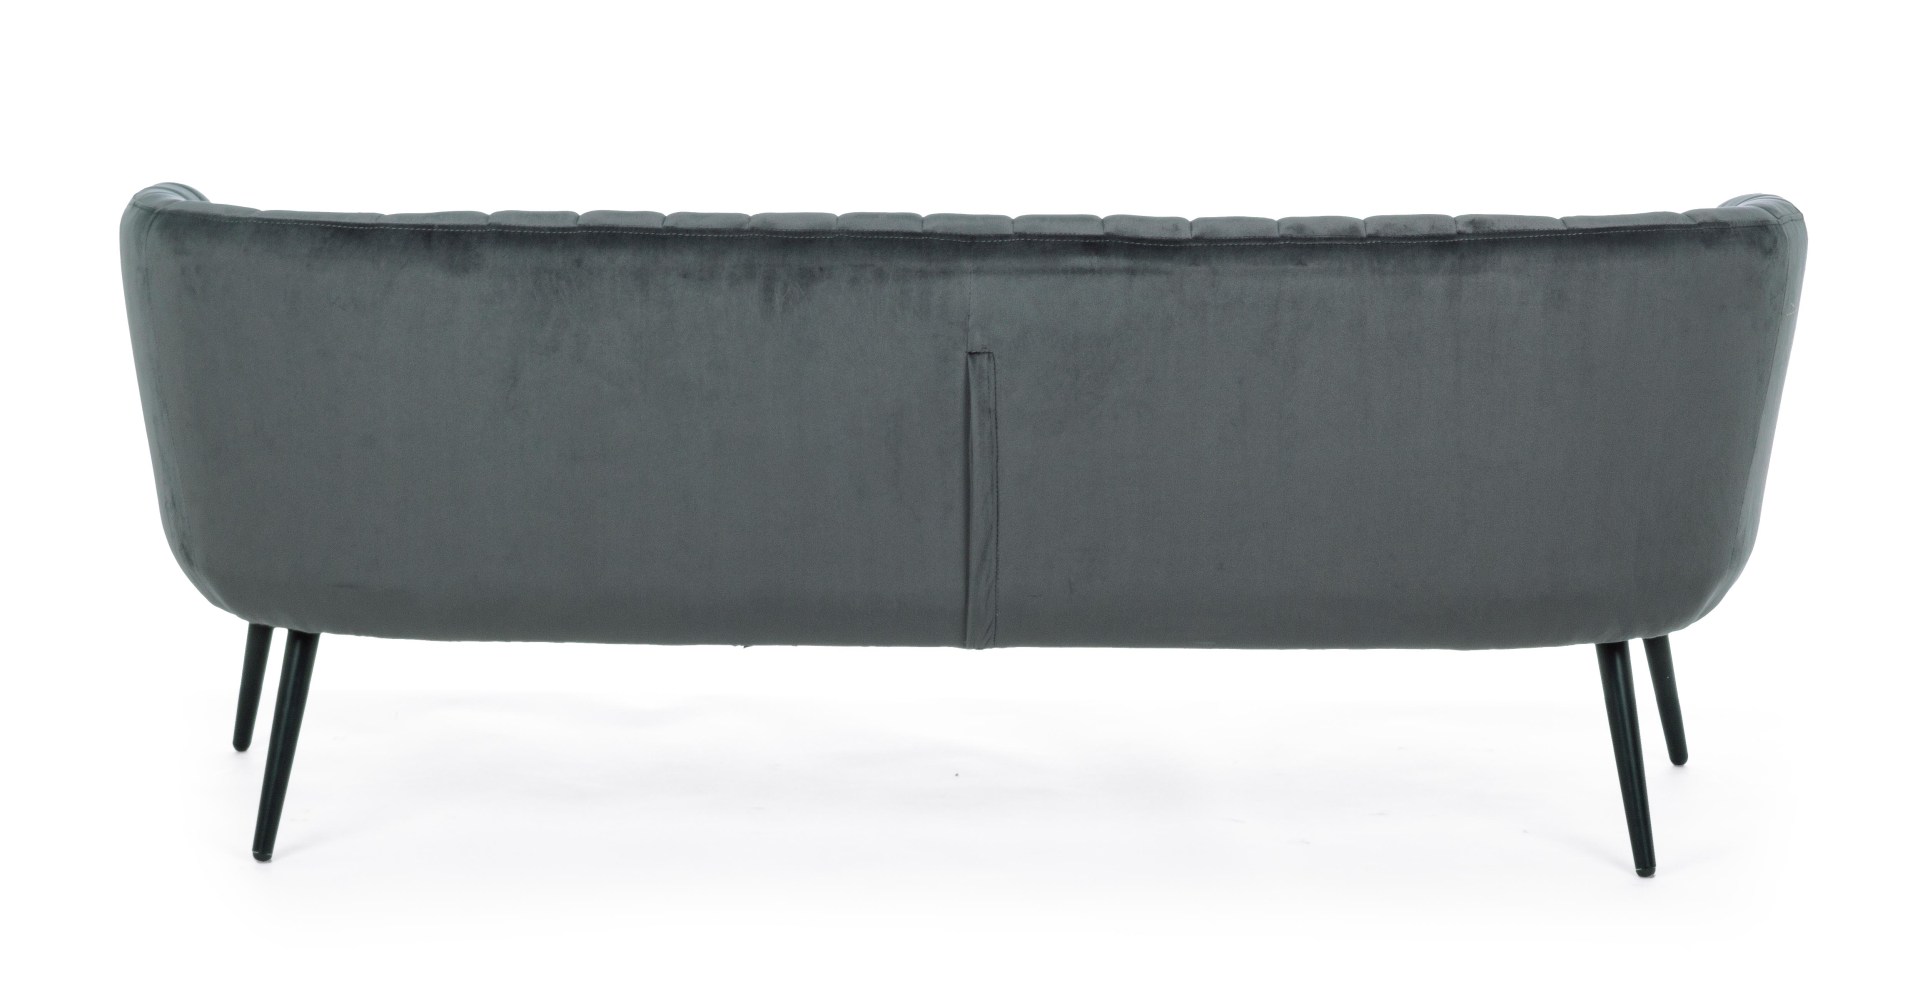 Das Sofa Avril überzeugt mit seinem modernen Design. Gefertigt wurde es aus Stoff in Samt-Optik, welcher einen grauen Farbton besitzt. Das Gestell ist aus Metall und hat eine schwarze Farbe. Das Sofa ist in der Ausführung als 3-Sitzer. Die Breite beträgt 